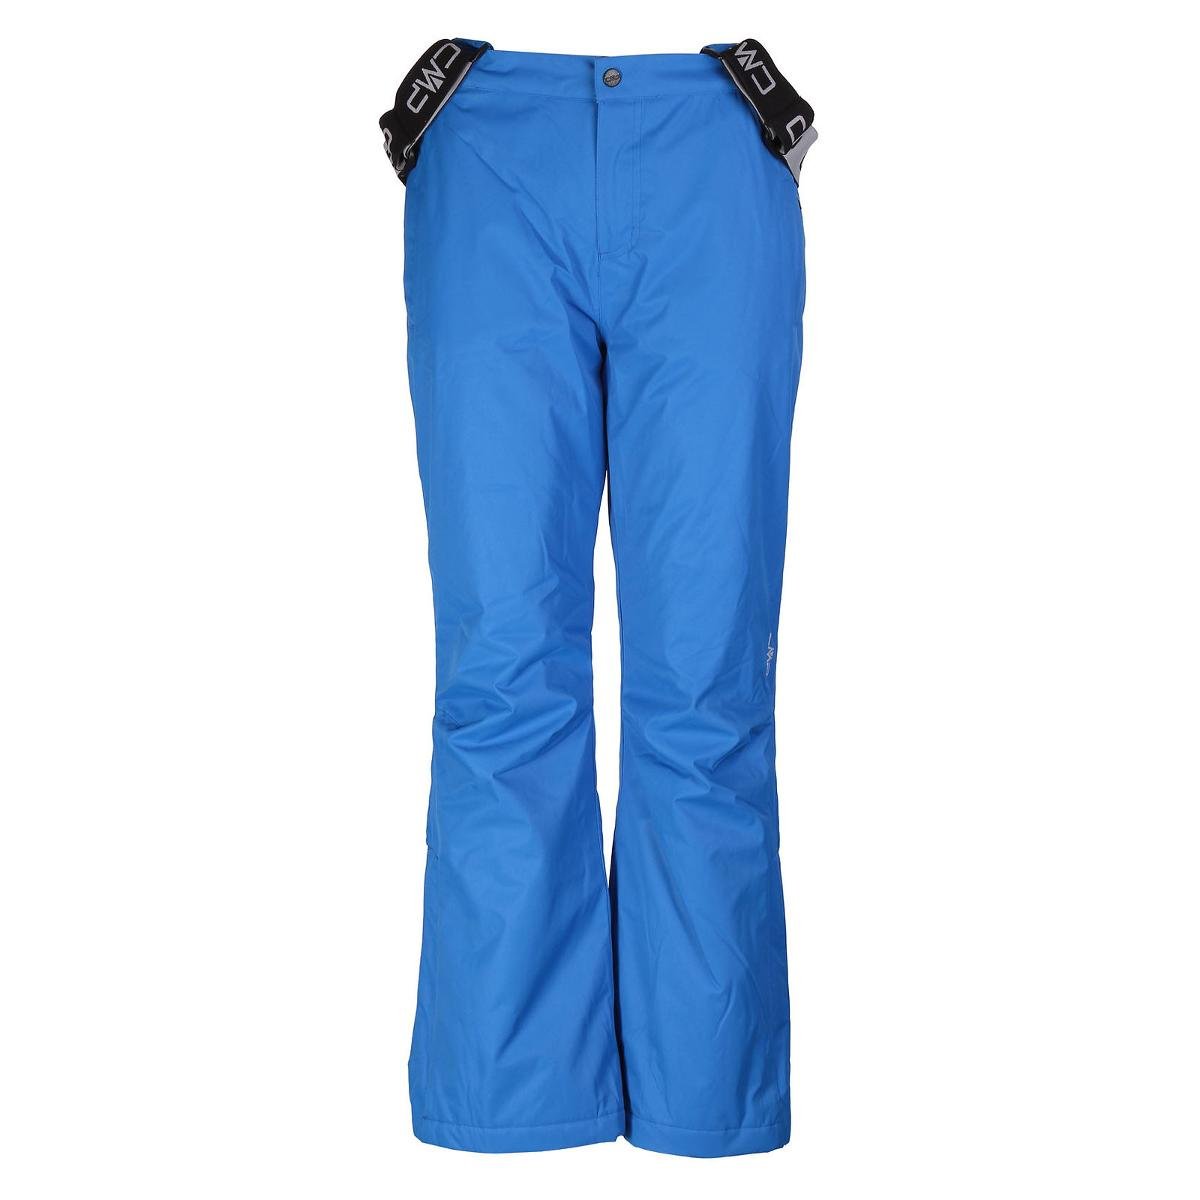 CMP spodnie narciarskie, niebieski, 128 3W15994_N951_128